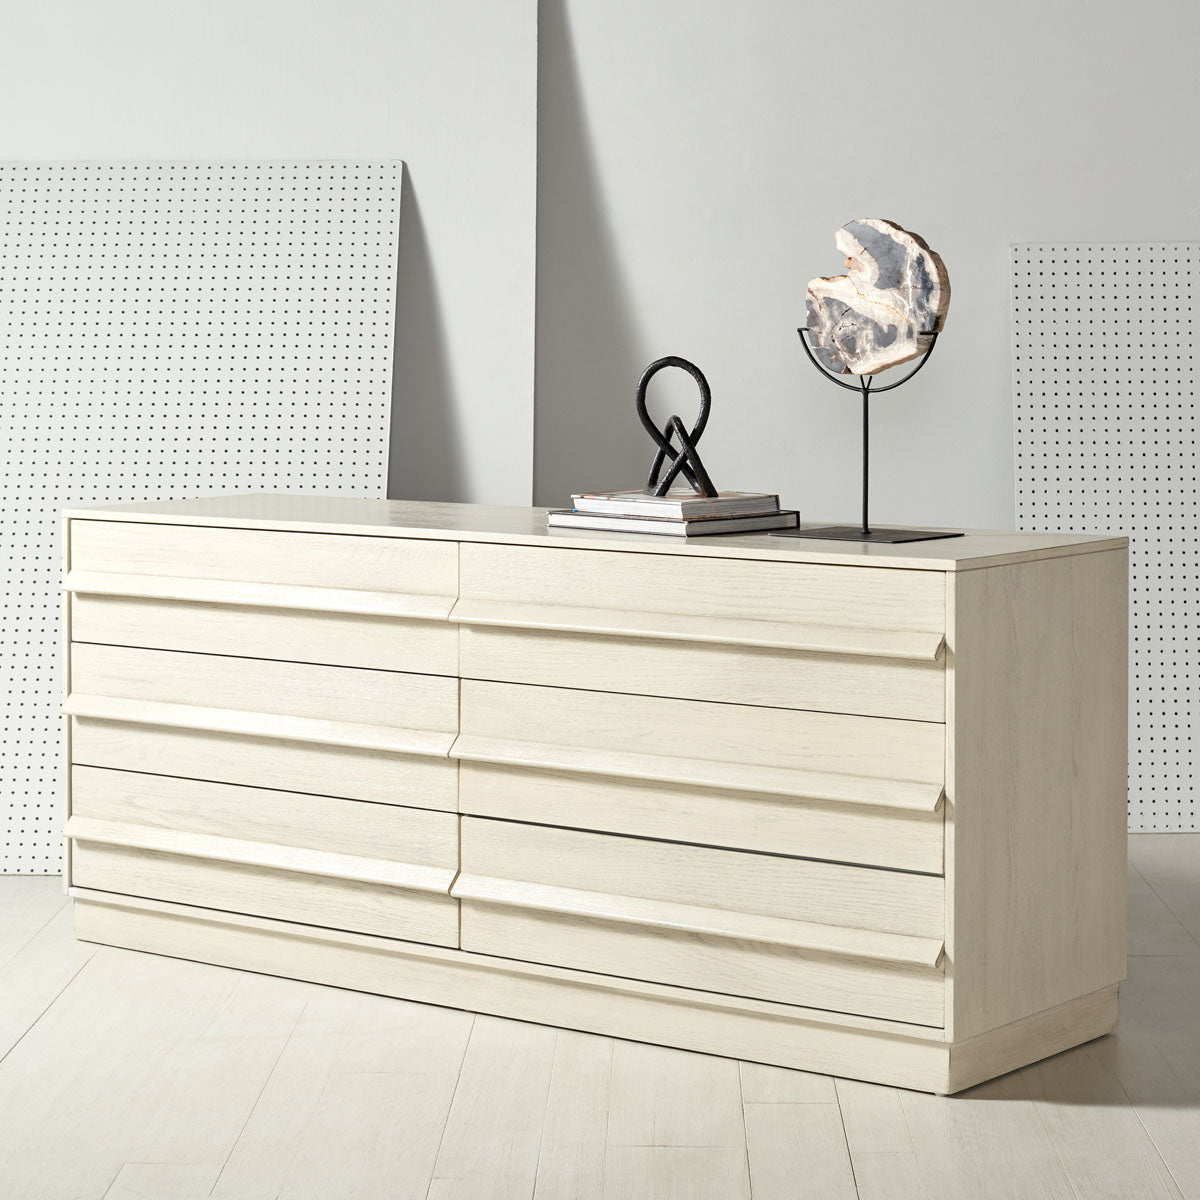 Safavieh Couture Deirdra 6 Drawer Wood Dresser - White Wash